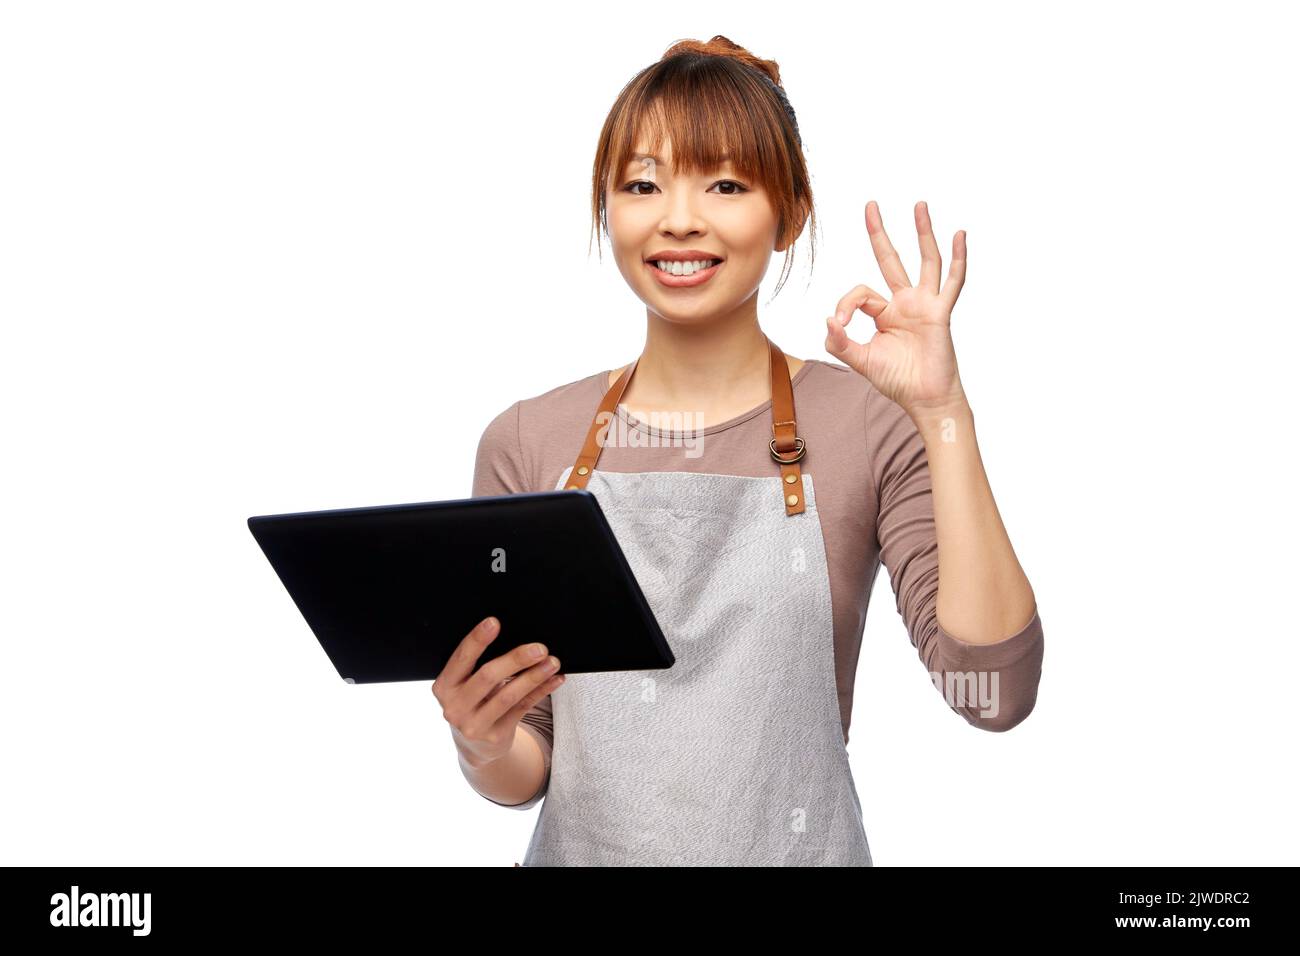 mujer feliz en delantal con la tableta pc mostrando ok Foto de stock